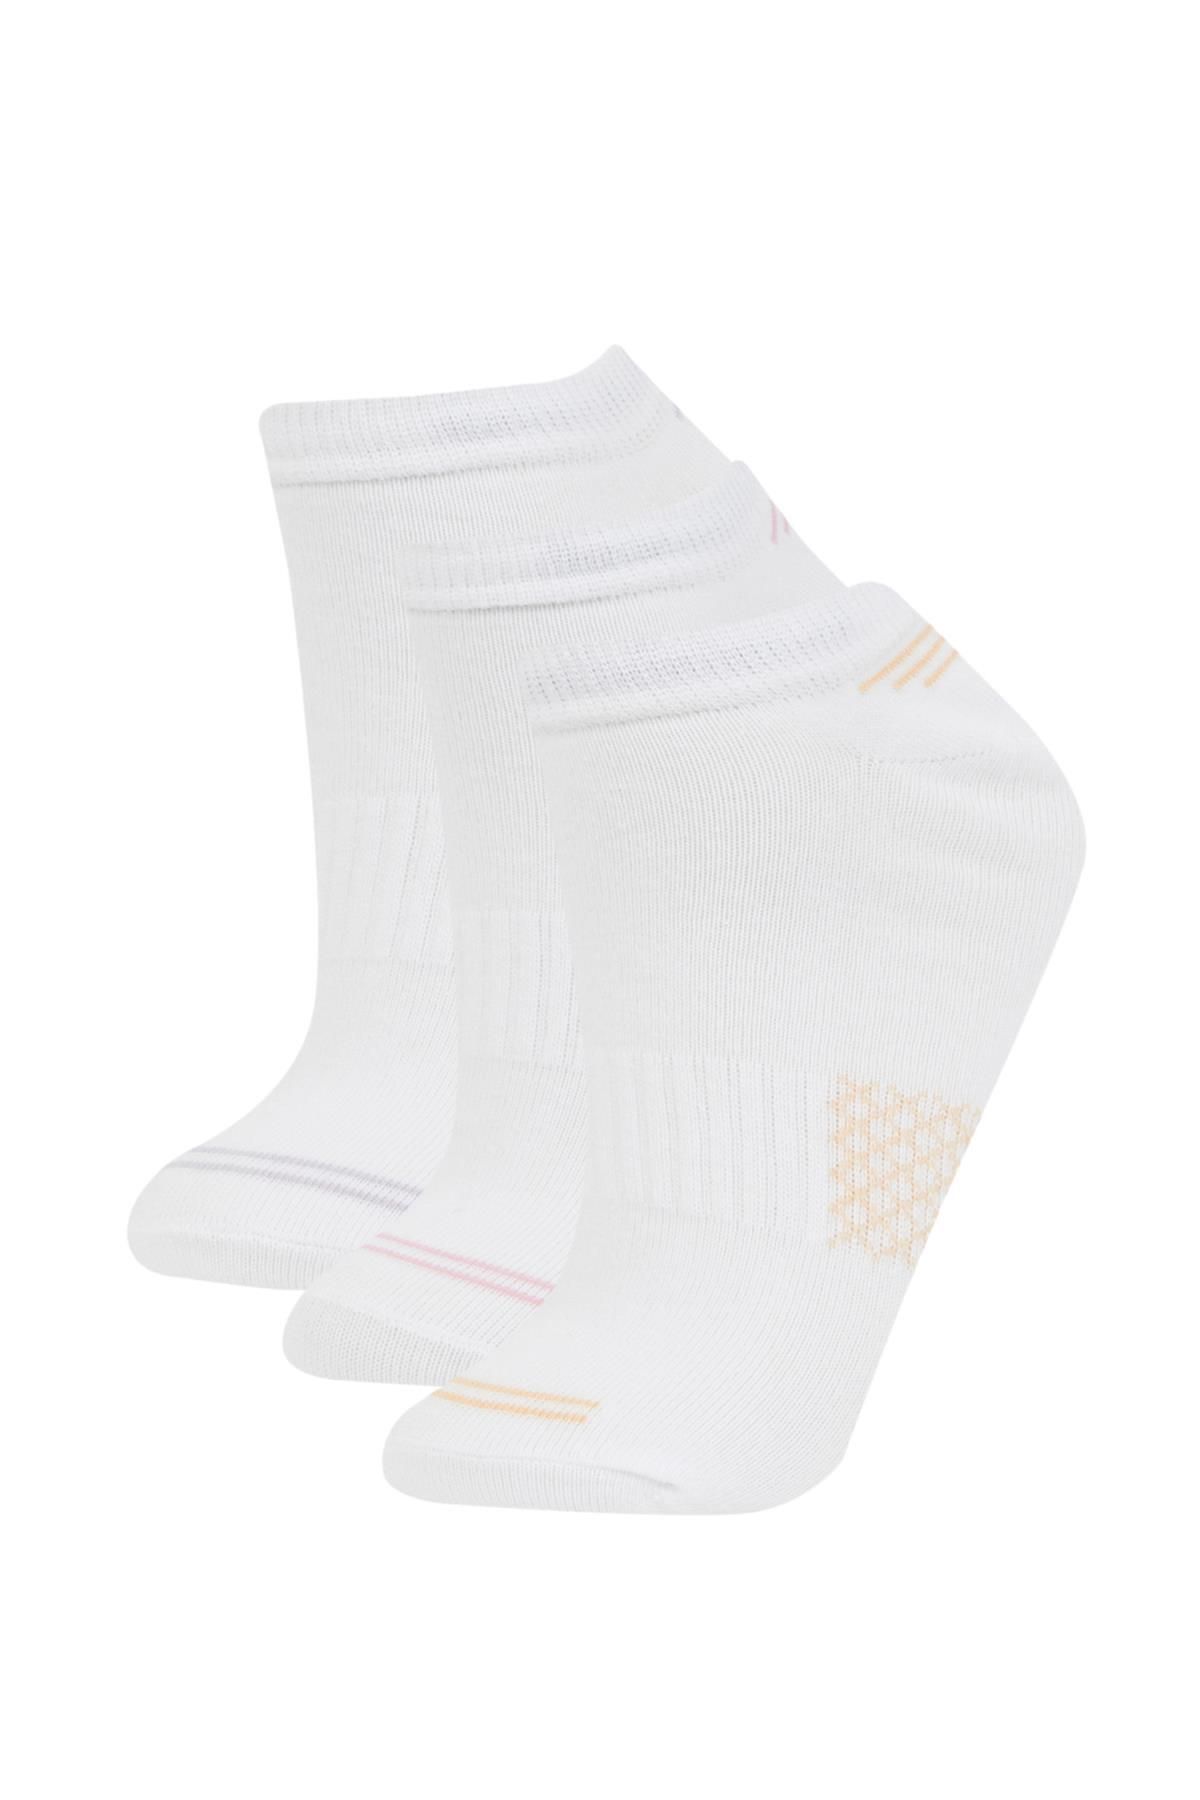 Defacto Kadın 3lü Pamuklu Patik Çorap B8445AXNS